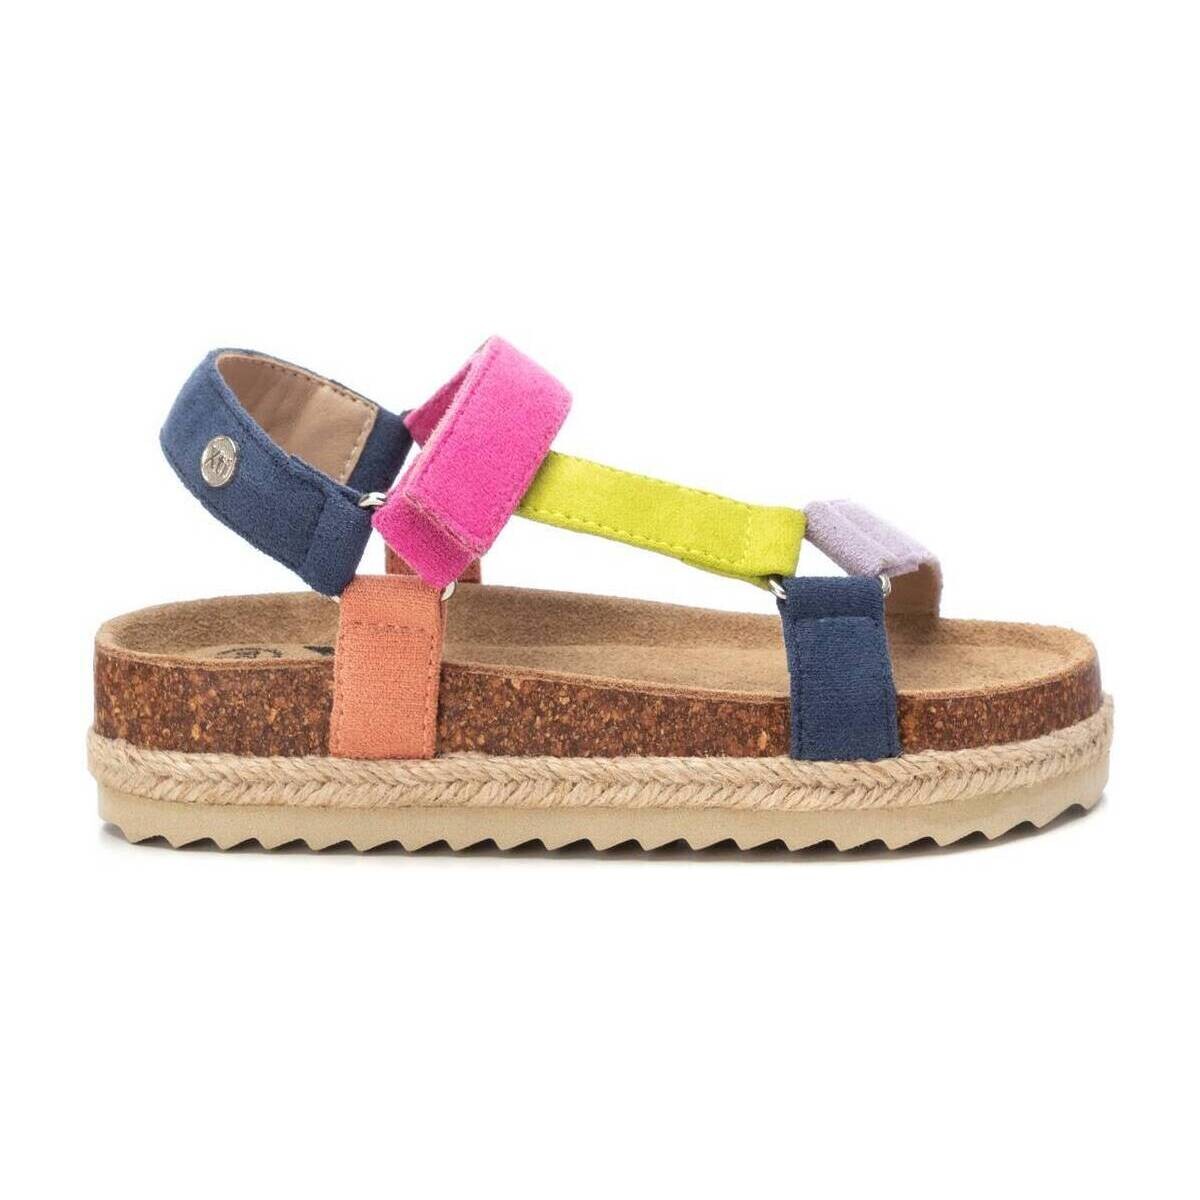 Chaussures Fille Sandales et Nu-pieds Xti 15090401 Multicolore